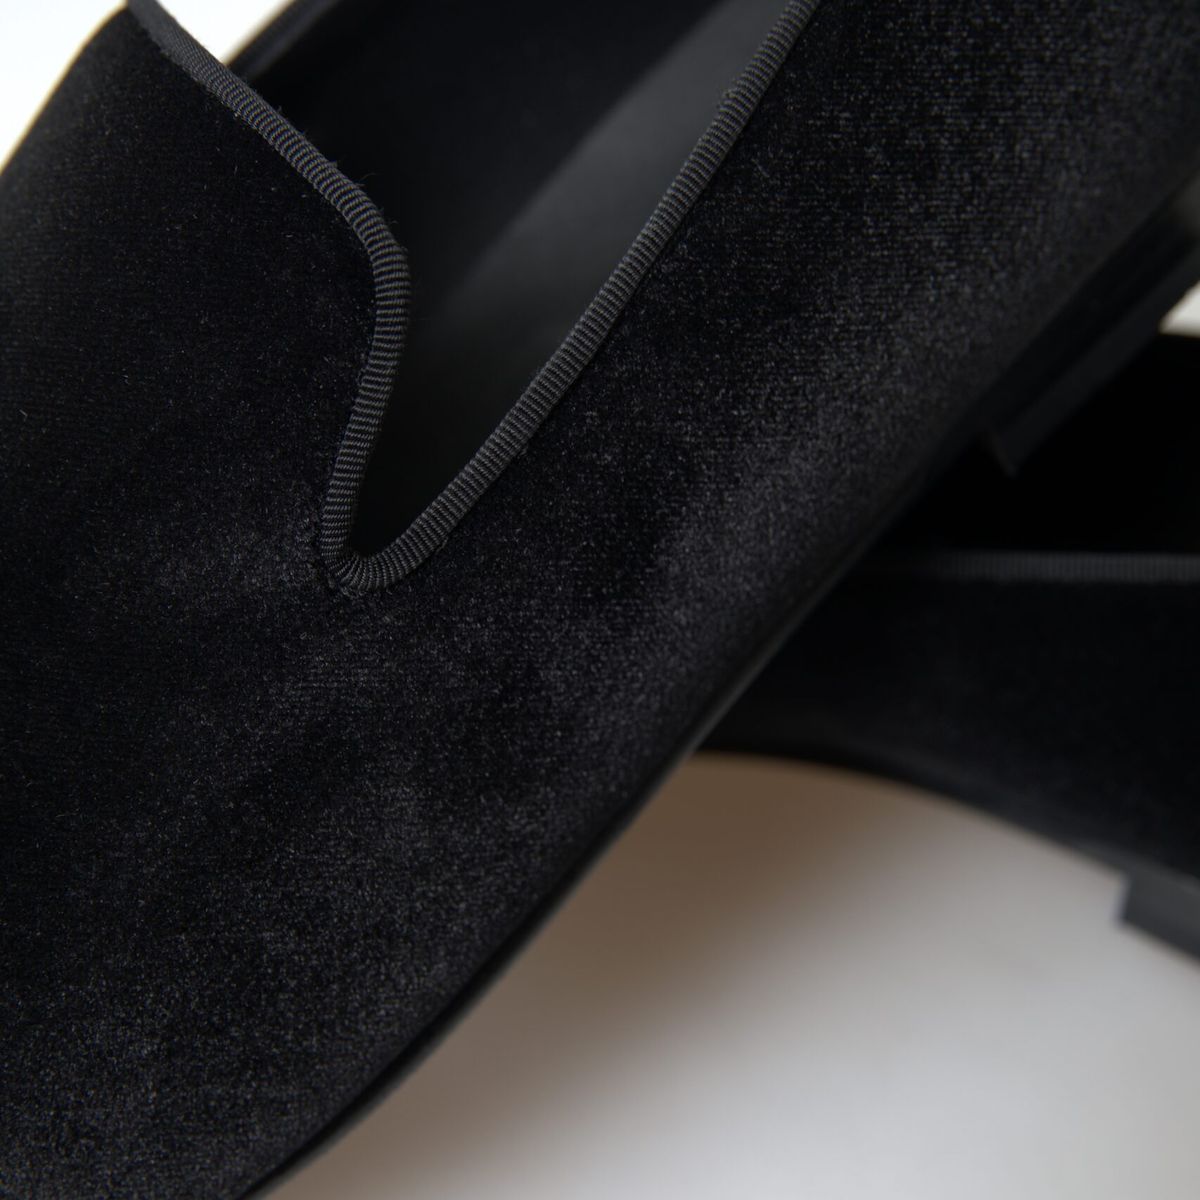 Elegant Velvet Black Loafers for Men